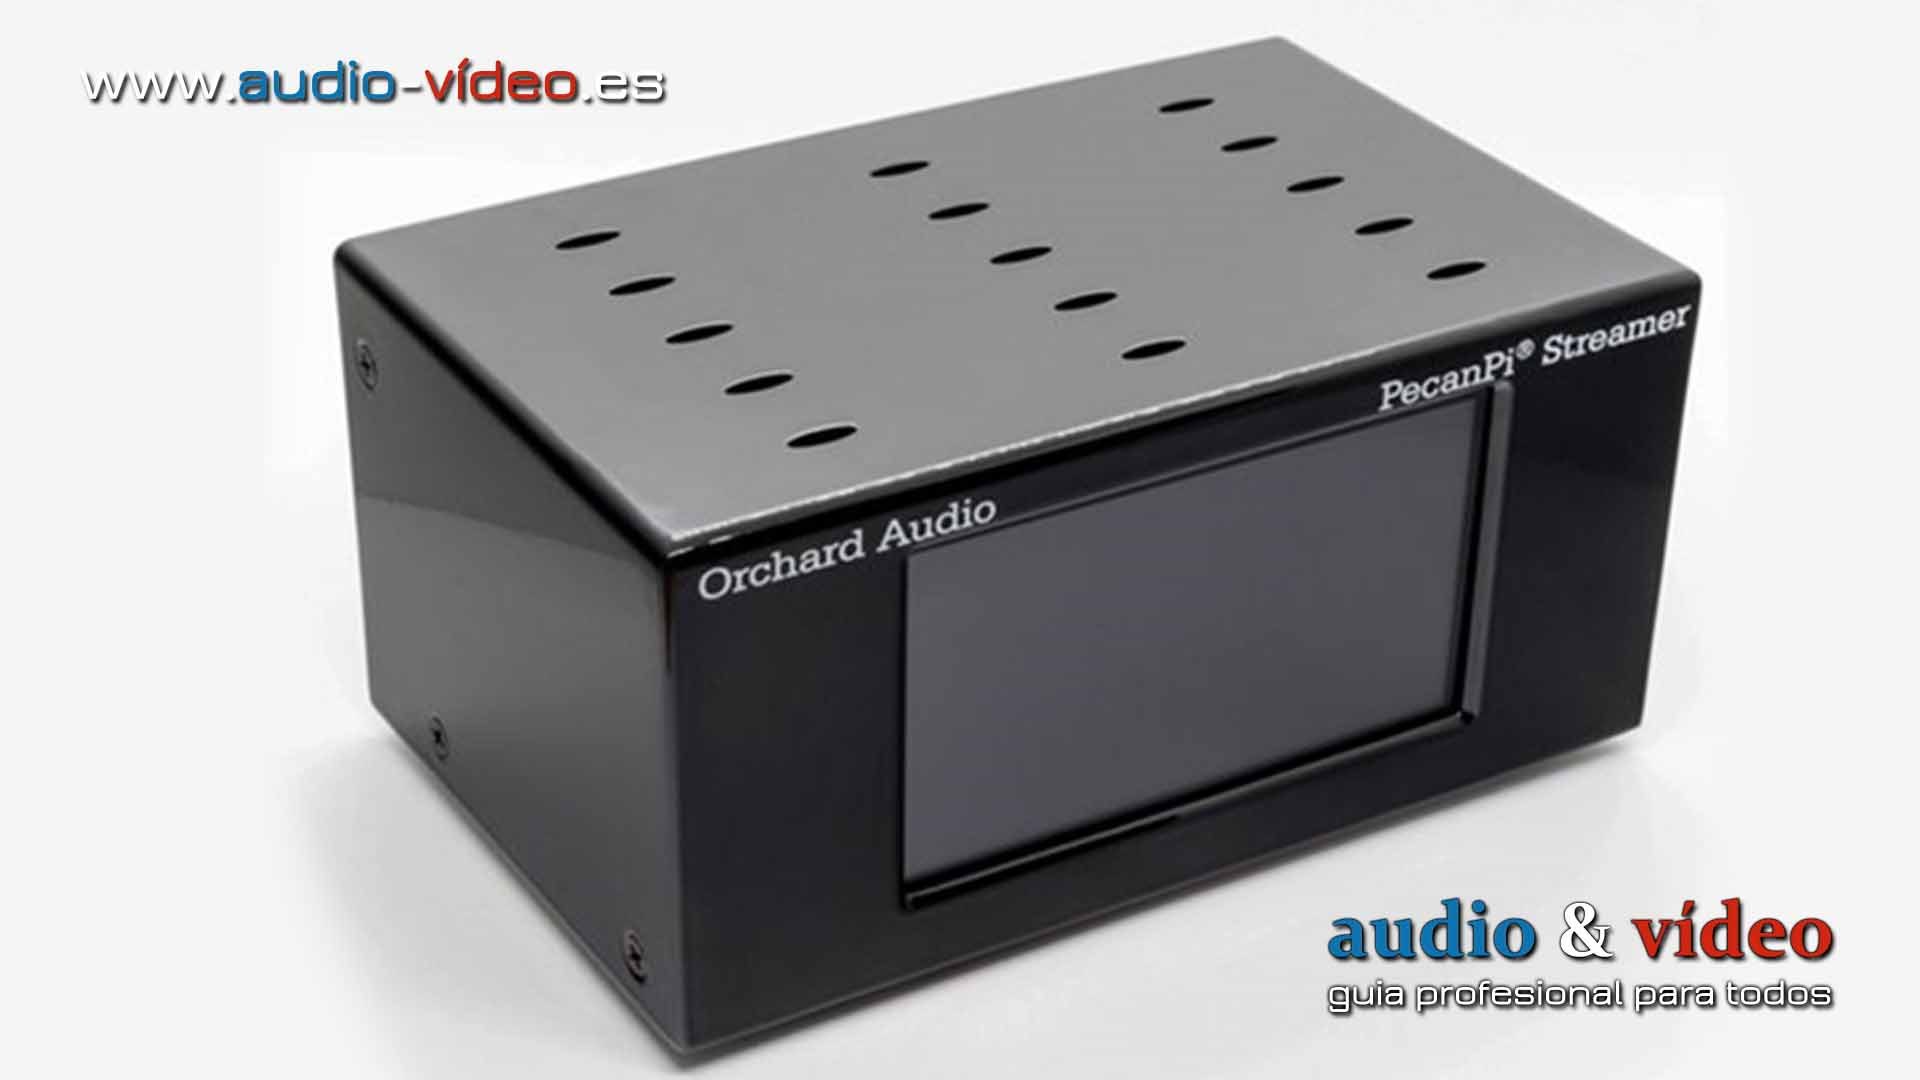 Orchard Audio – streamer audio con DAC – PecanPi® Streamer Ultra